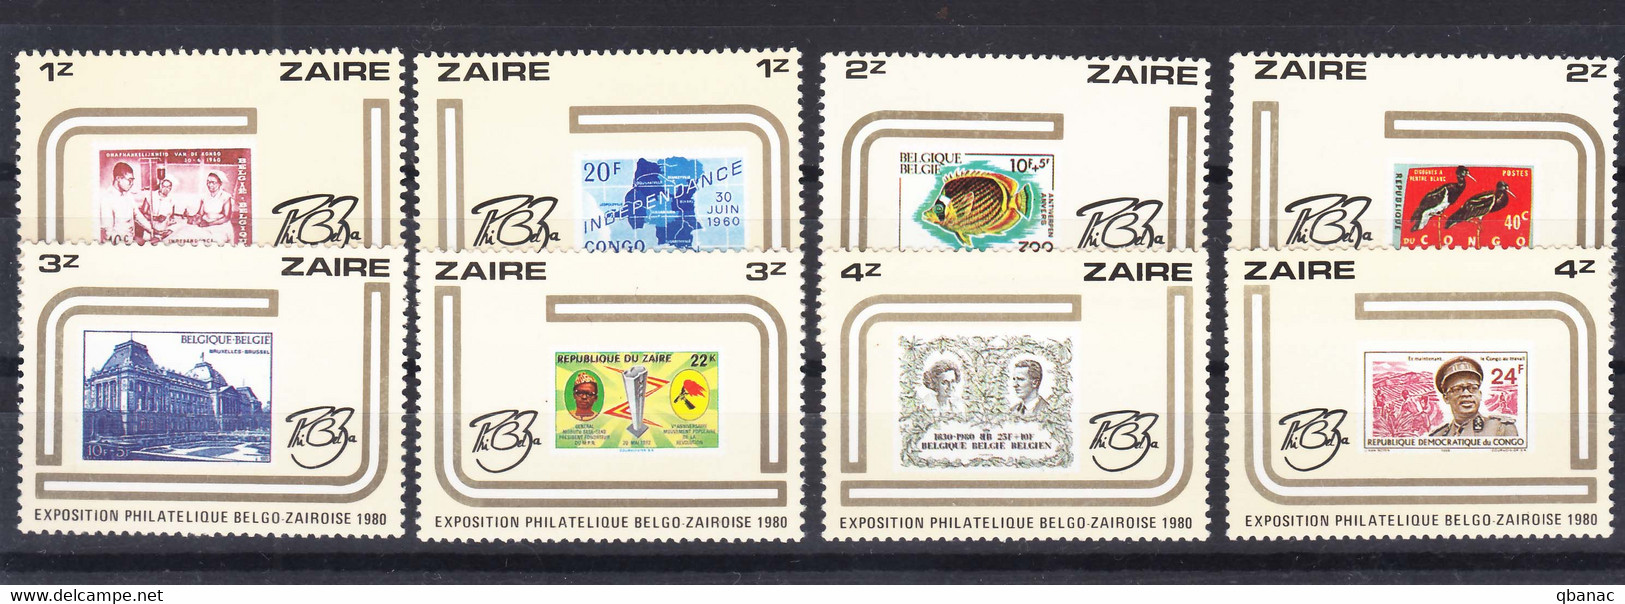 Zaire (Congo) 1980 Mint Never Hinged Set, Philatelic Exposition - Ongebruikt